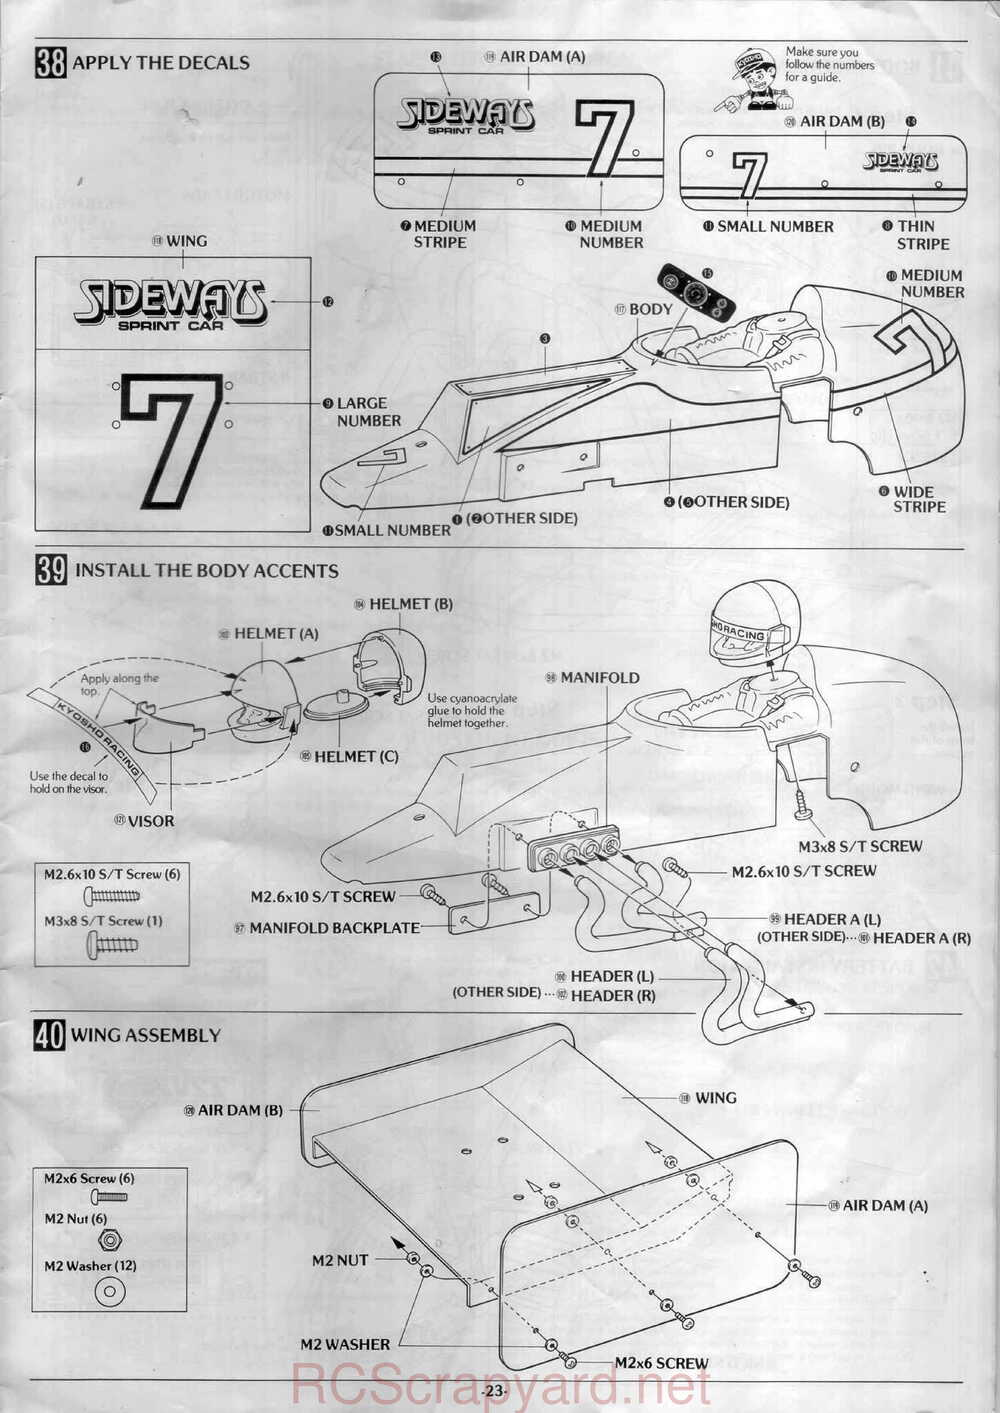 Kyosho - 3126 - Sideways Sprint-Car - Manual - Page 23